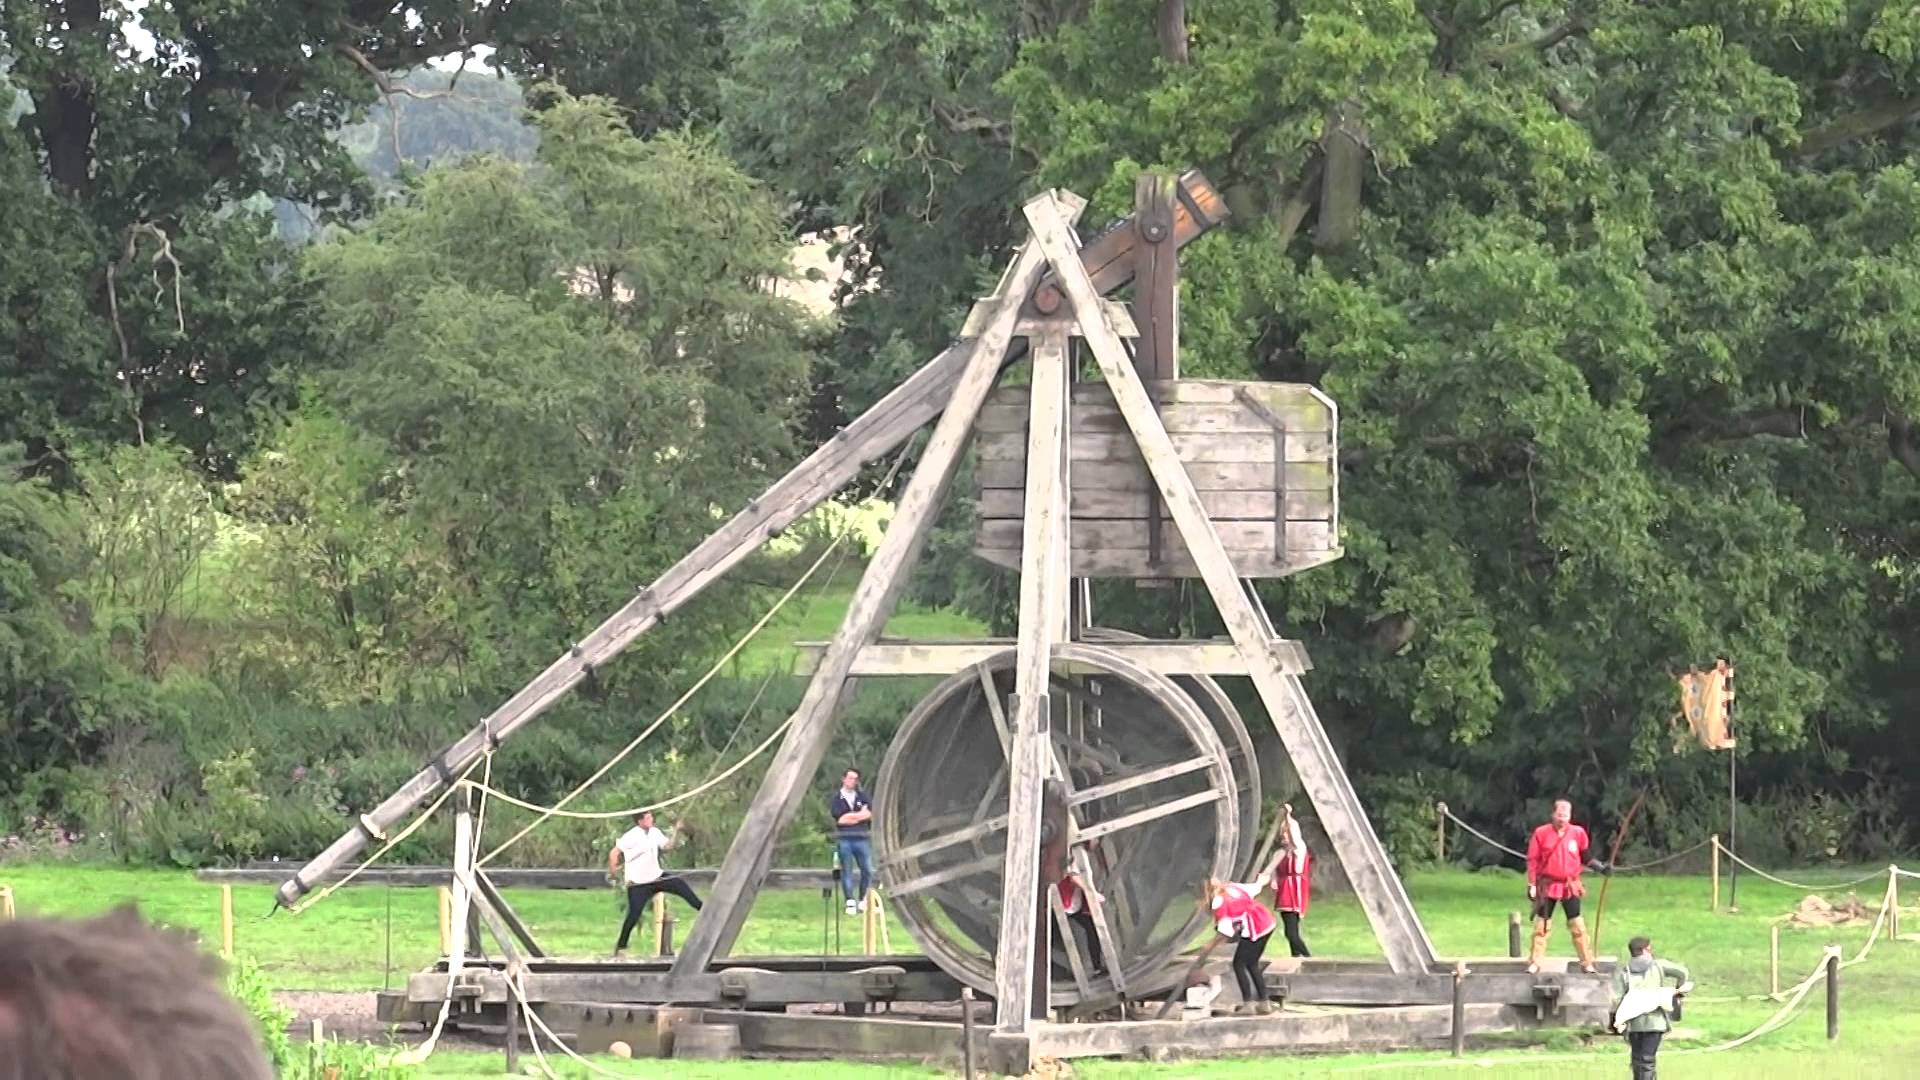 Warwick Castle - Trebuchet in Action, HD 1080p - YouTube